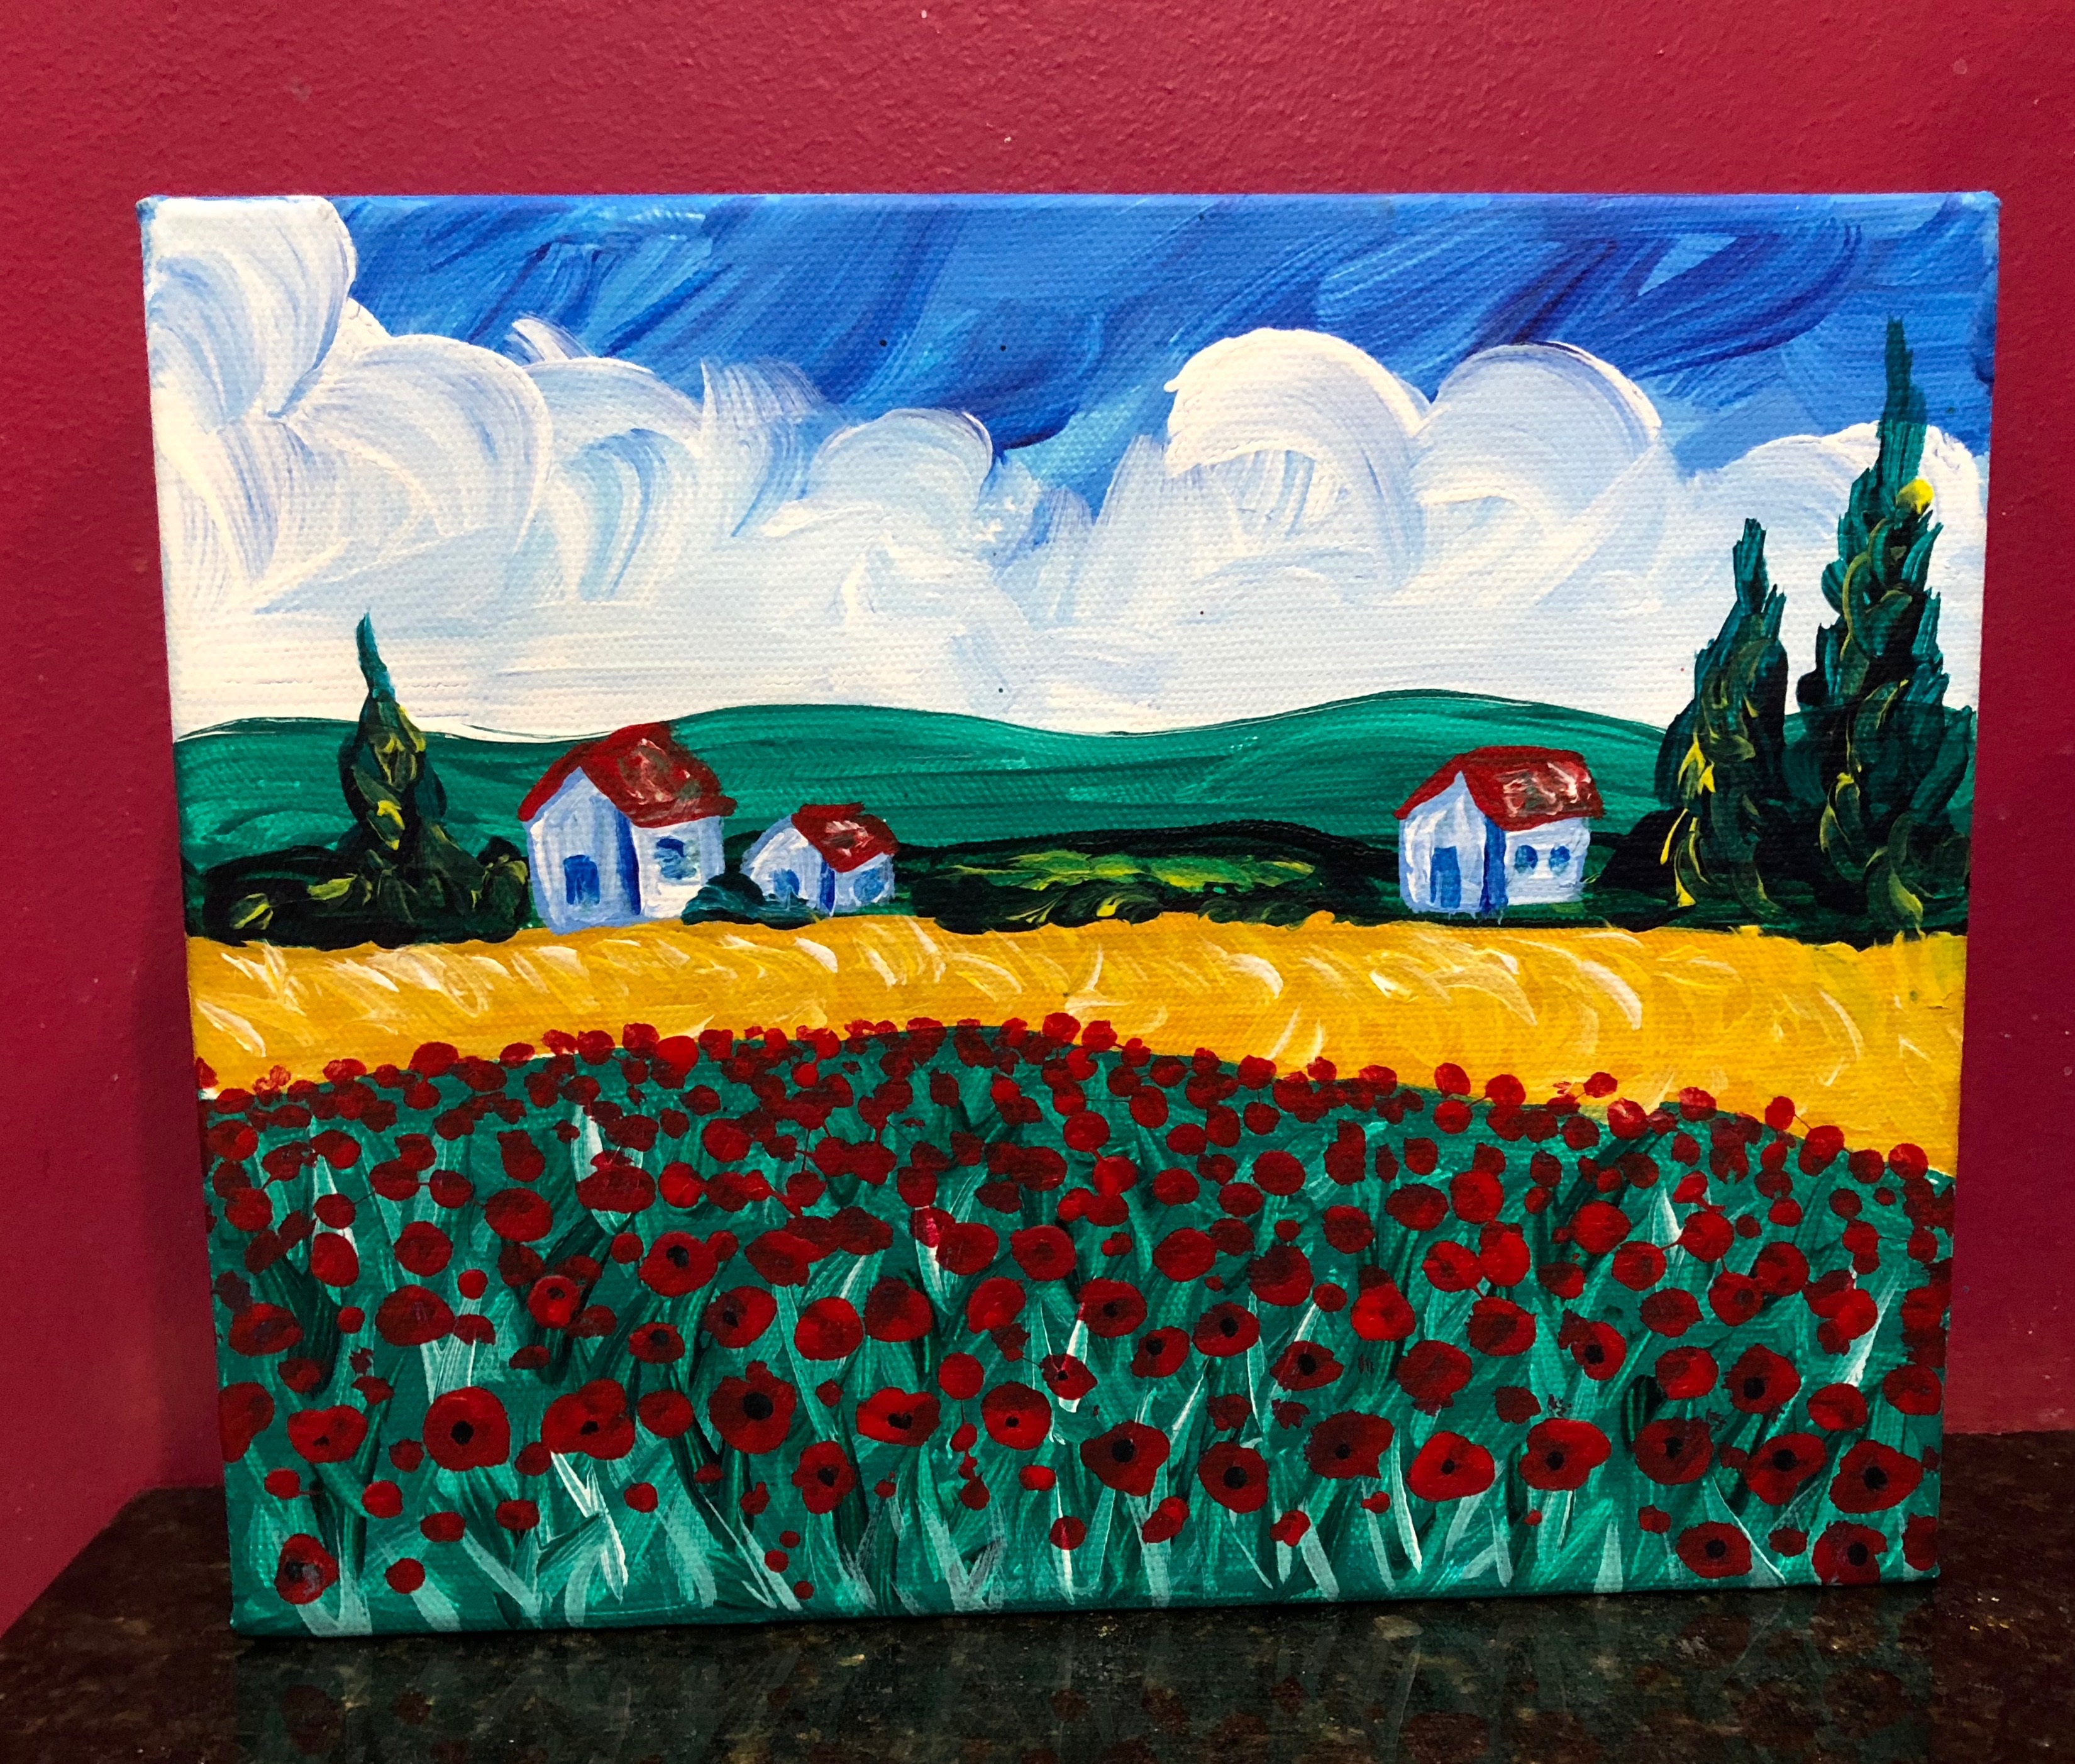 Poppies a la Van Gogh